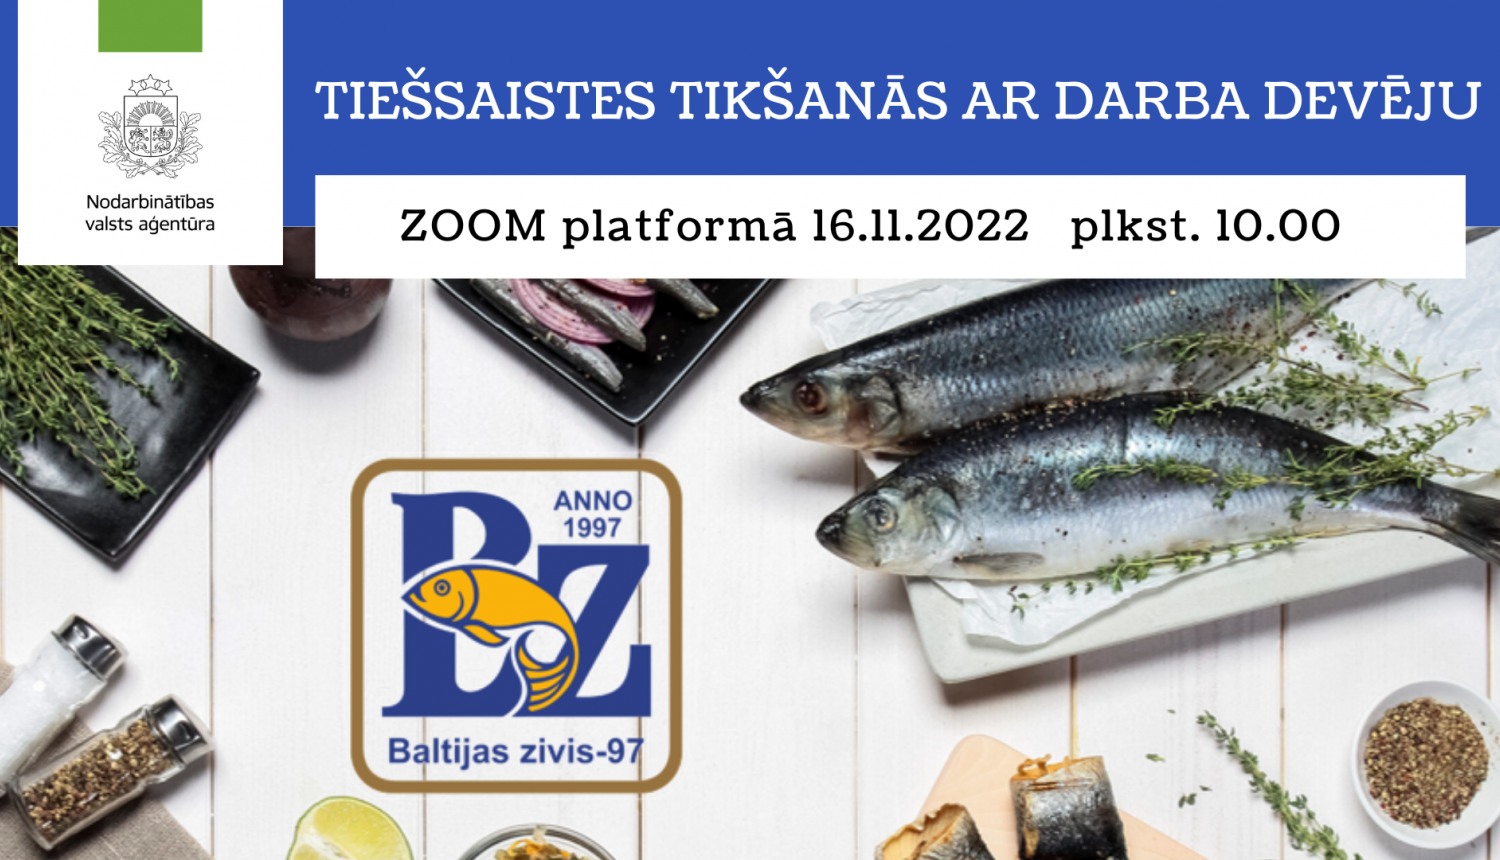 Tiešsaistes tikšanās ar darba devēju Baltijas zivis 97